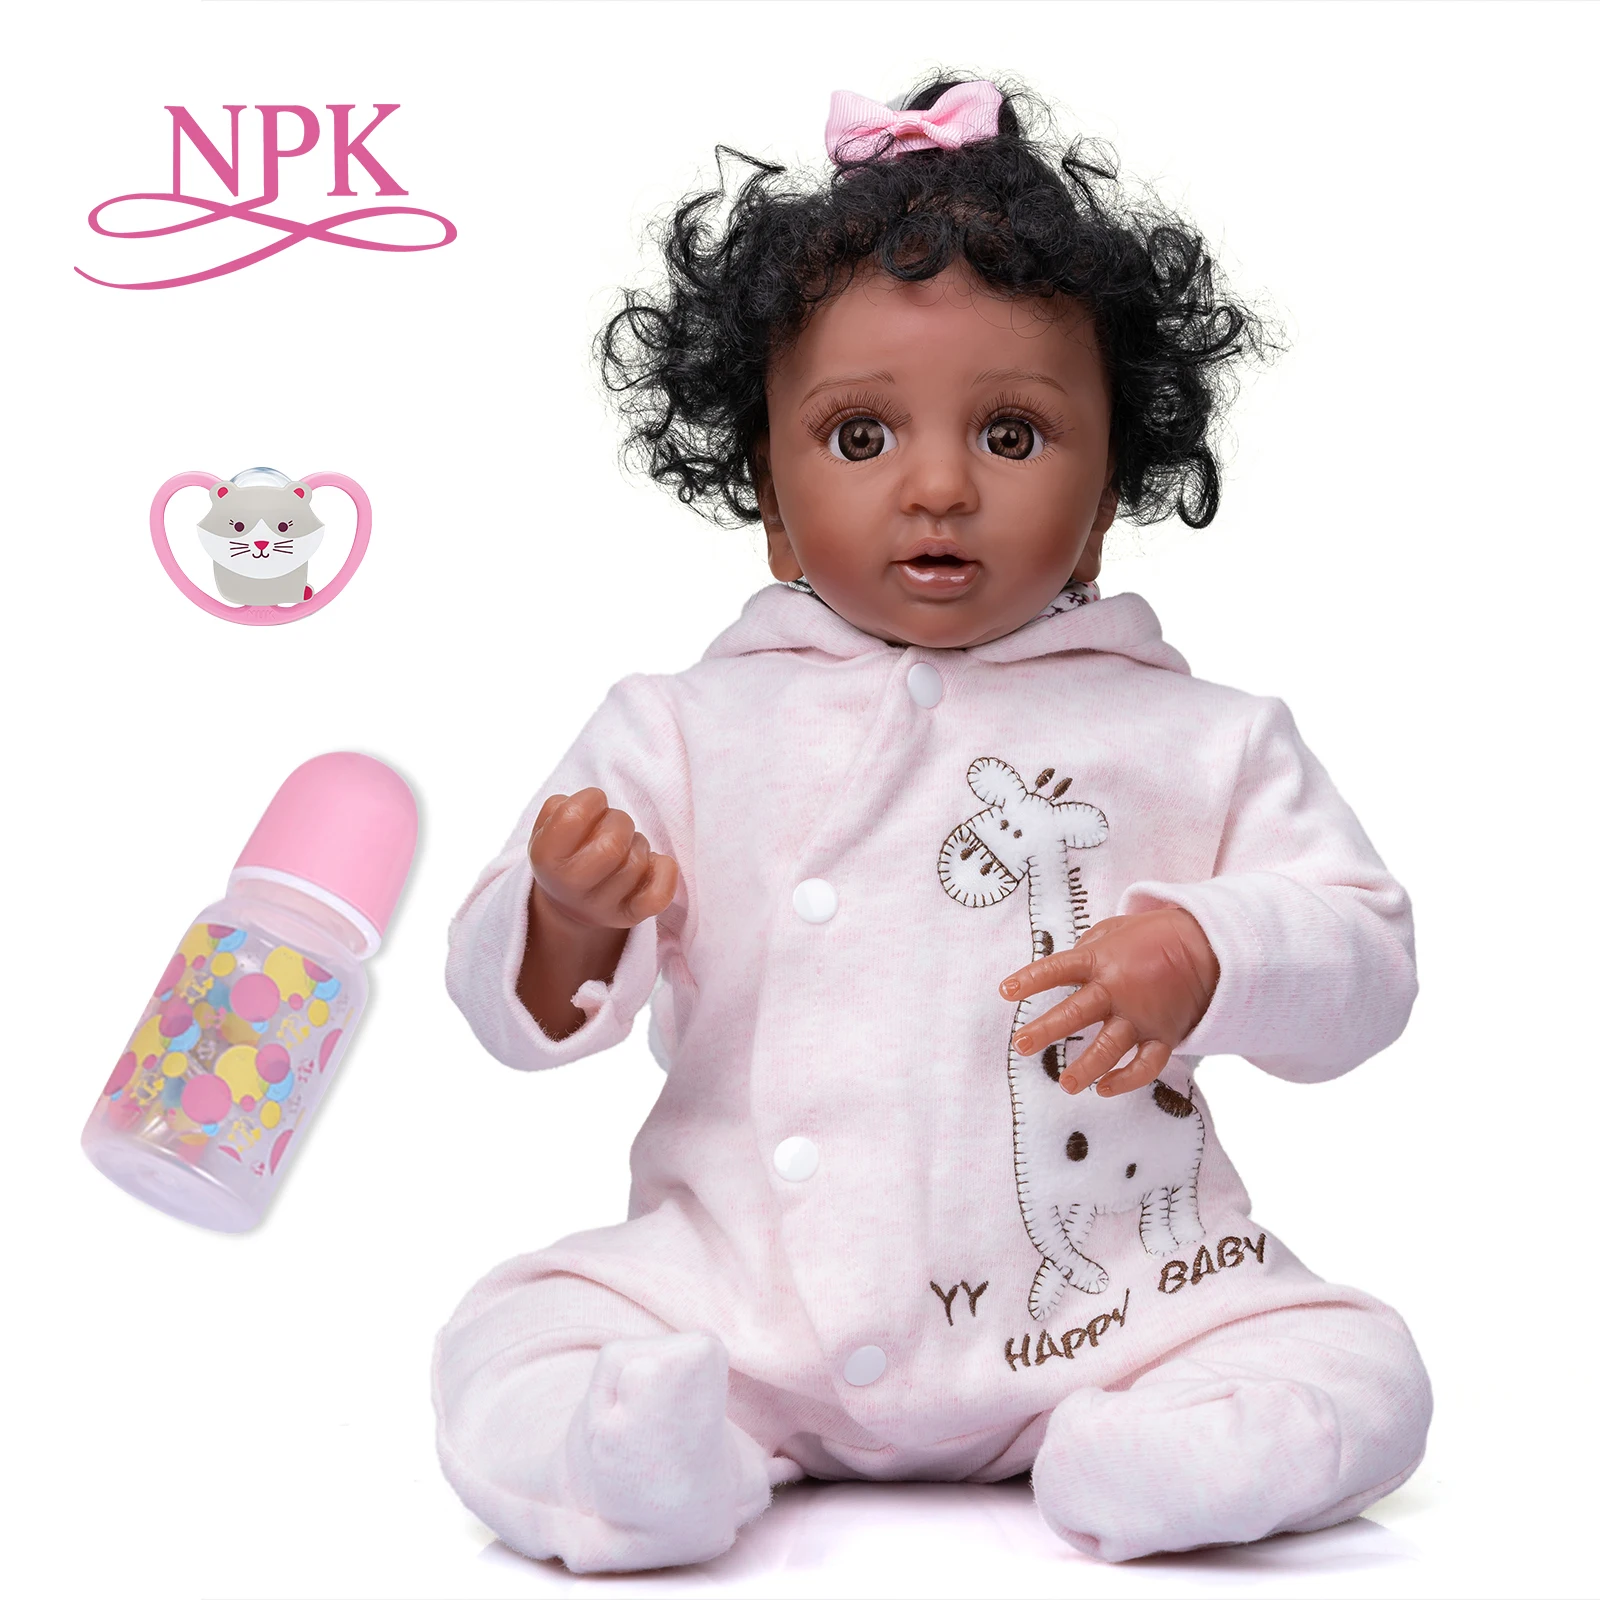 NPK 43 СМ Размер на Ели Premie Reborn Baby Doll с Тъмно Кафява Кожа и Черна Къдрава Коса, Реалистична Кукла Premie Baby Високо качество